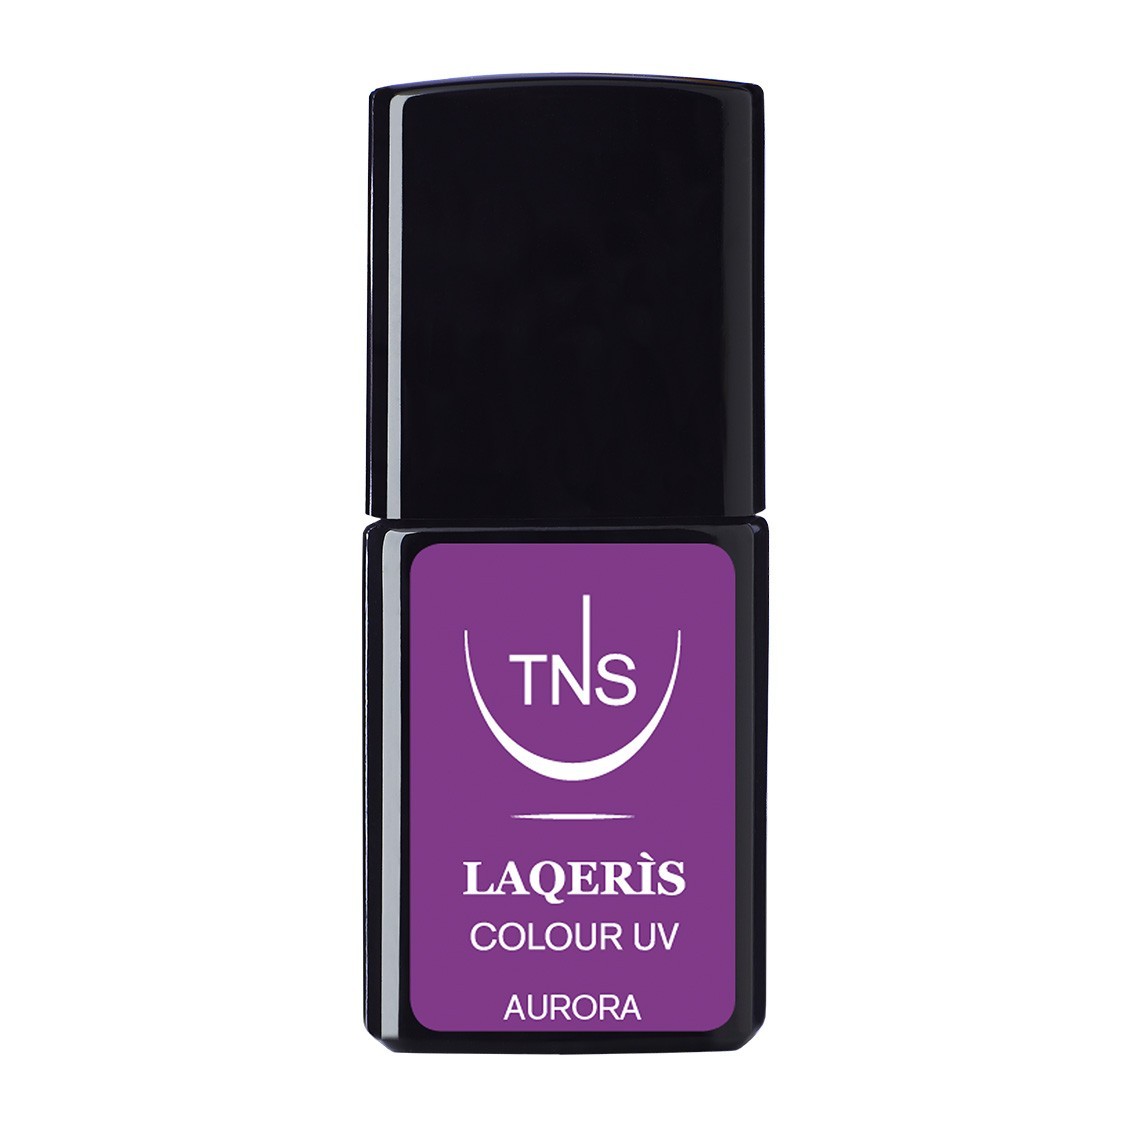 Semi-permanent nail polish pink lilac Aurora 10 ml Laqerìs TNS